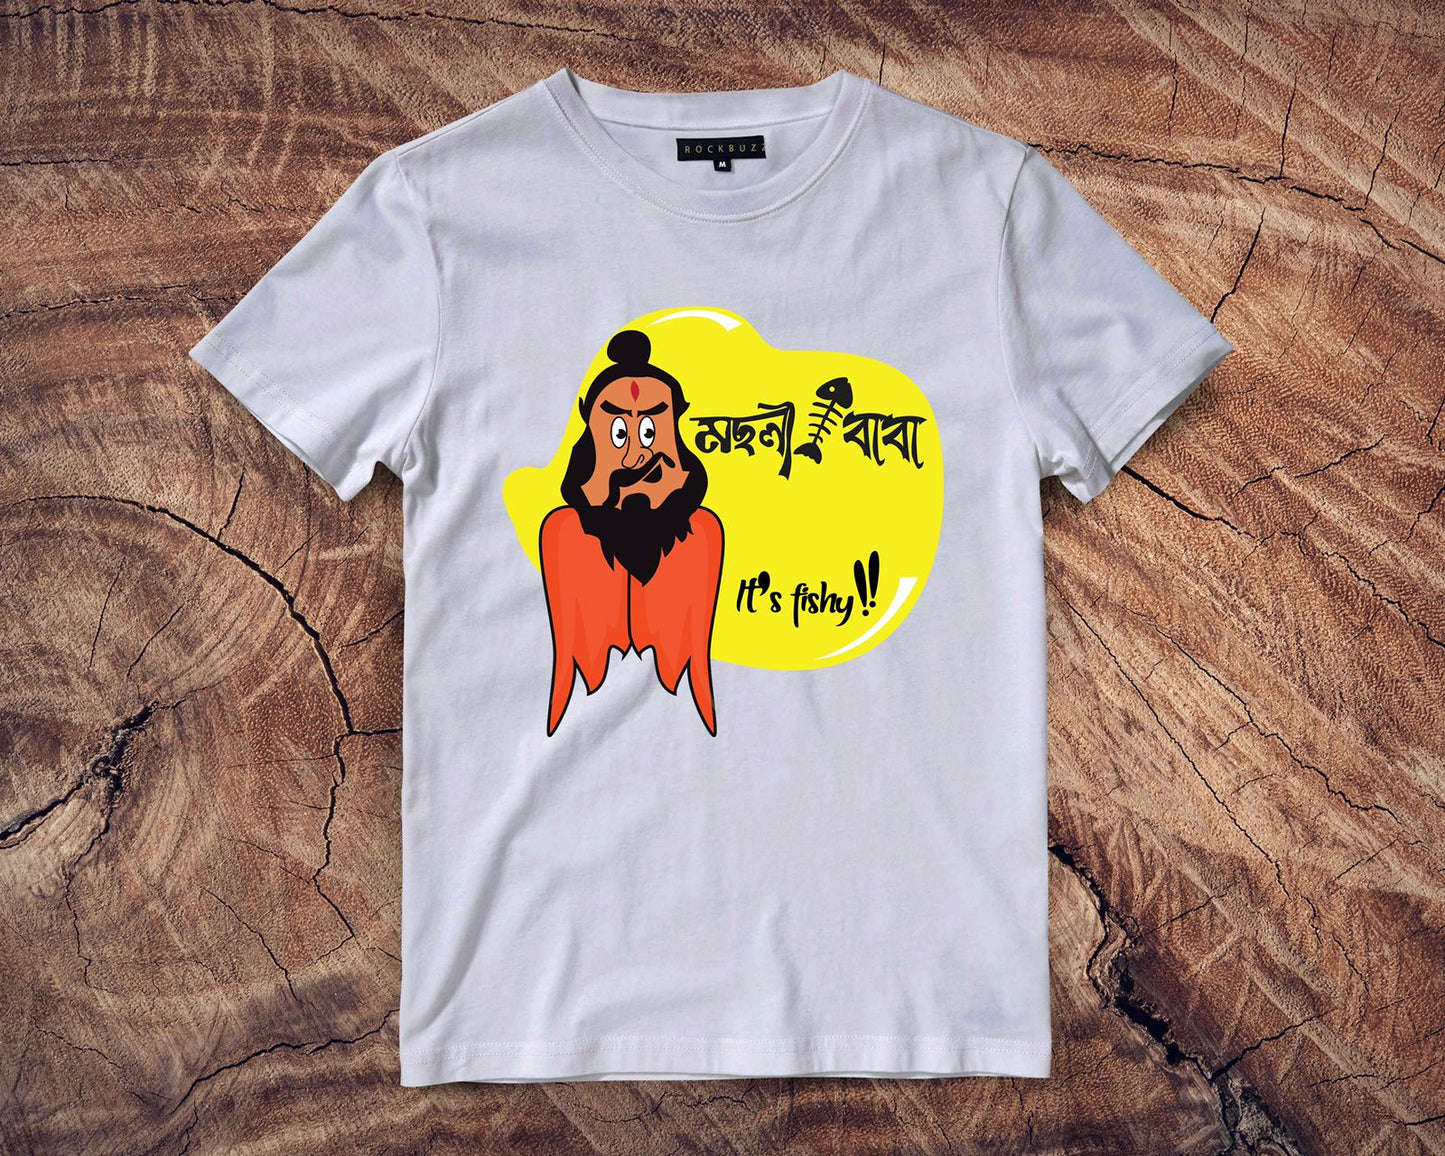 Machlibaba Feluda printed multicolor Bengali Tshirt